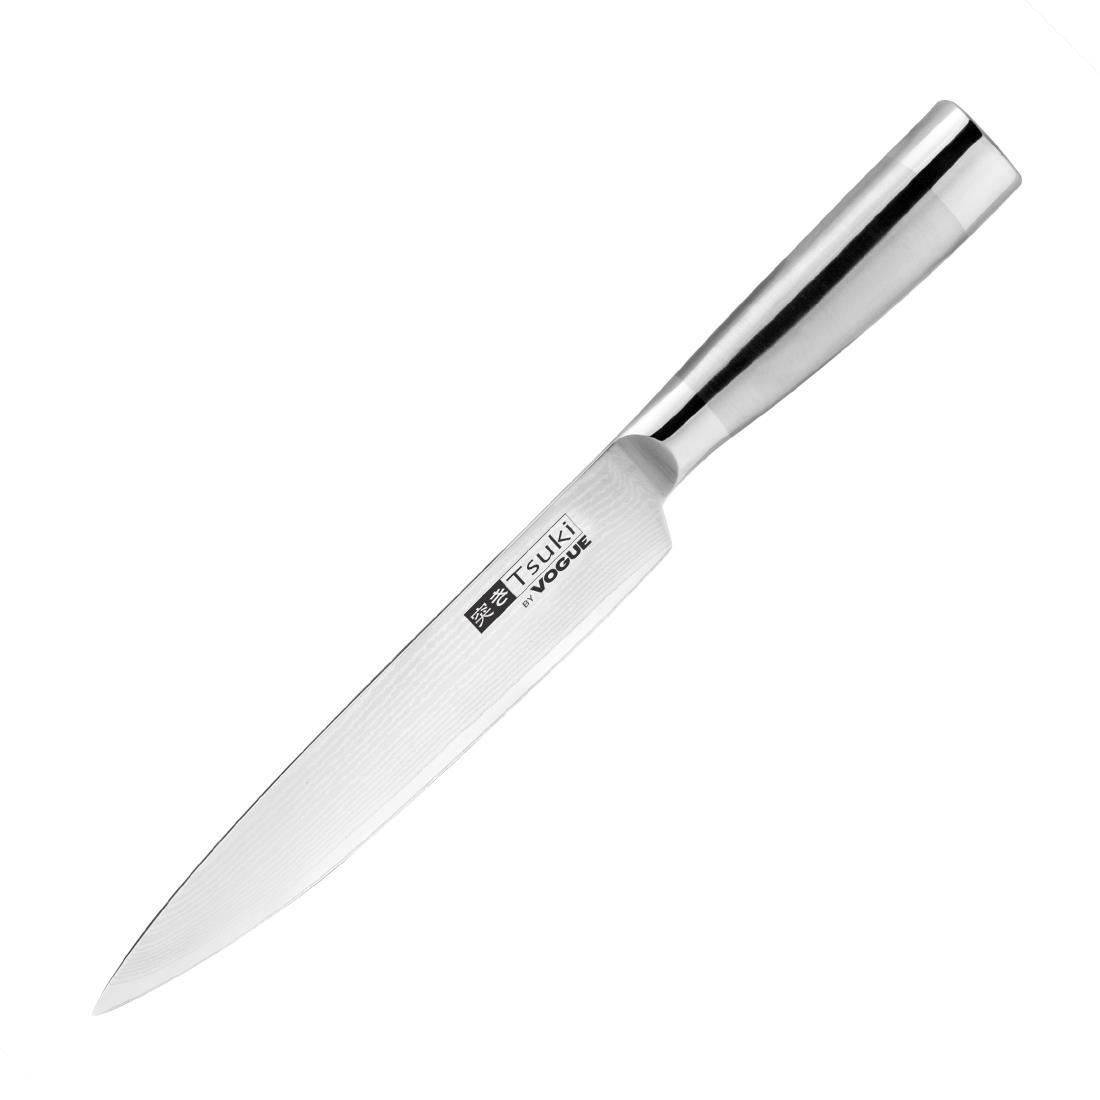 Vogue Tsuki Series 8 Carving Knife 20cm - DA445  - 1